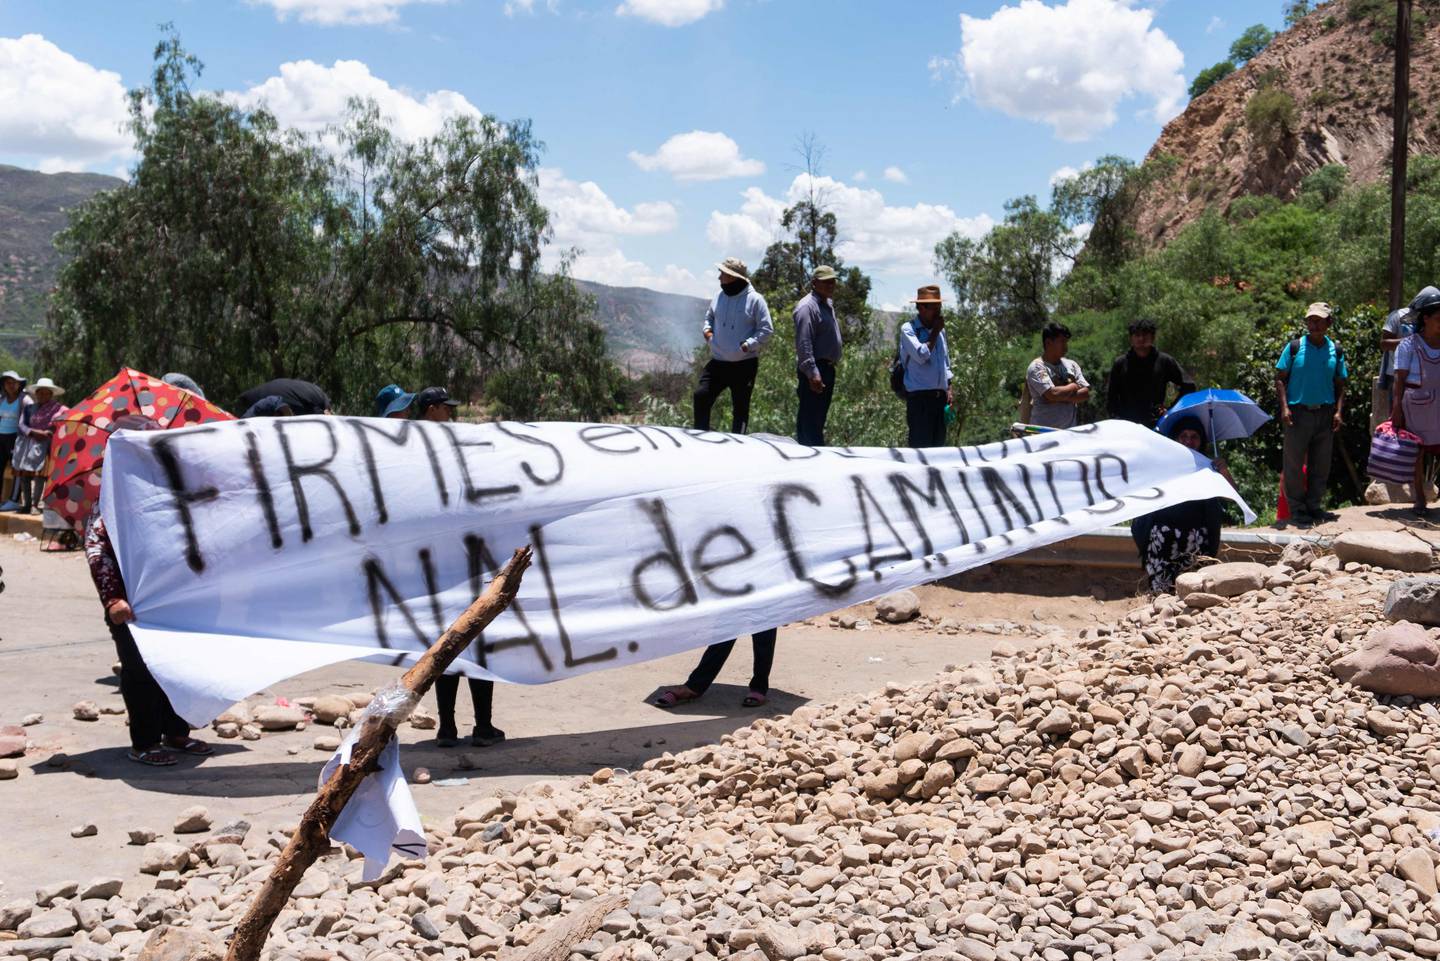 Los cocaleros partidarios del expresidente boliviano Evo Morales bloquean una carretera que va de La Paz a Cochabamba para exigir la renuncia de los jueces que descalificaron la candidatura de Morales para las elecciones presidenciales del próximo año en Bolivia.